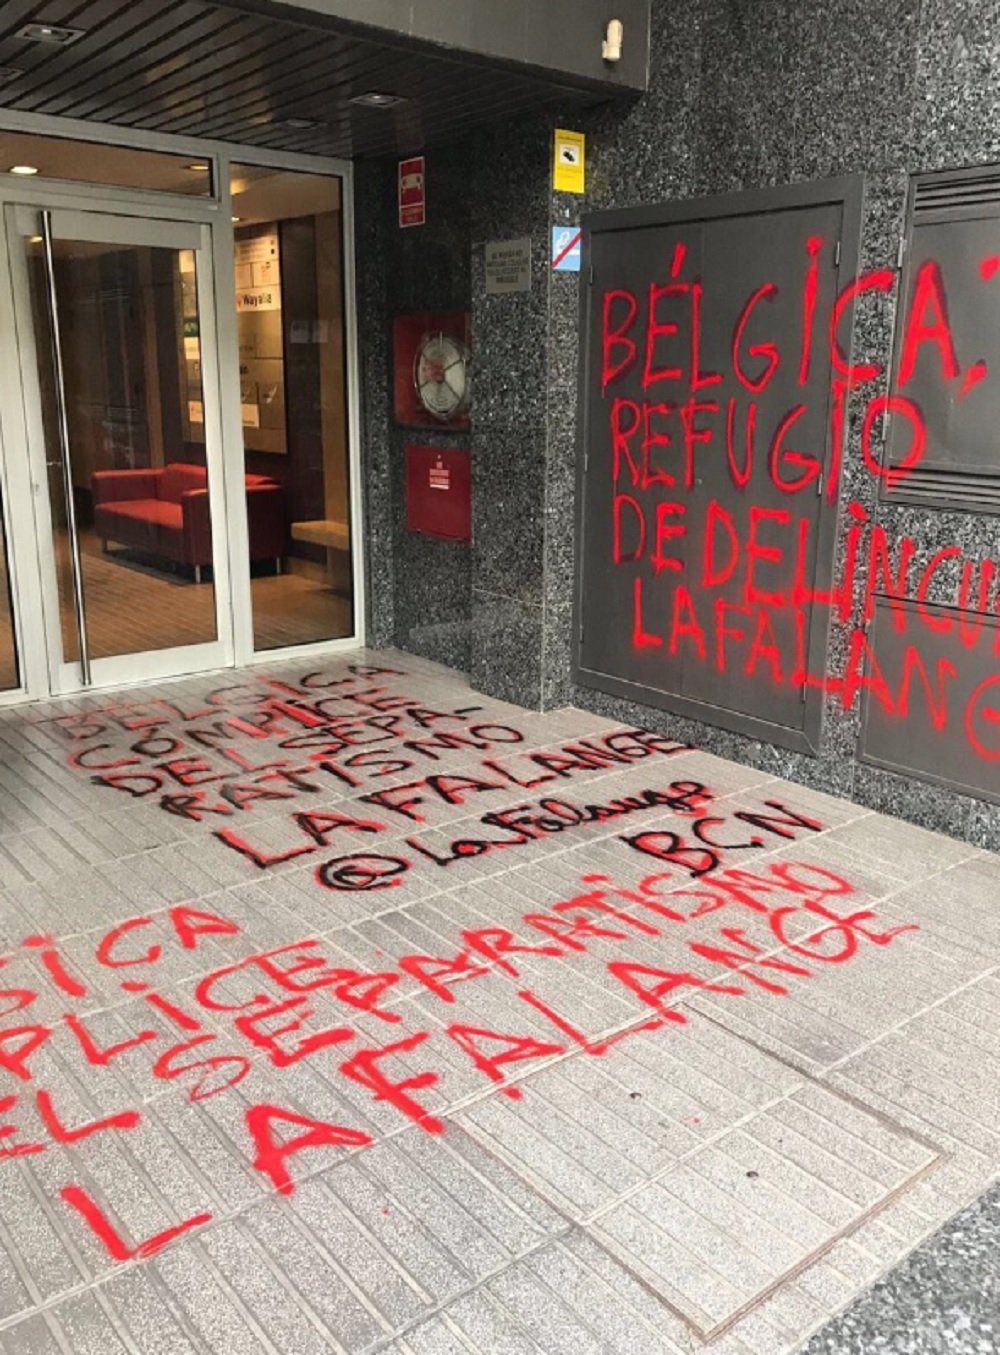 Apareixen pintades feixistes al Consolat belga a Barcelona